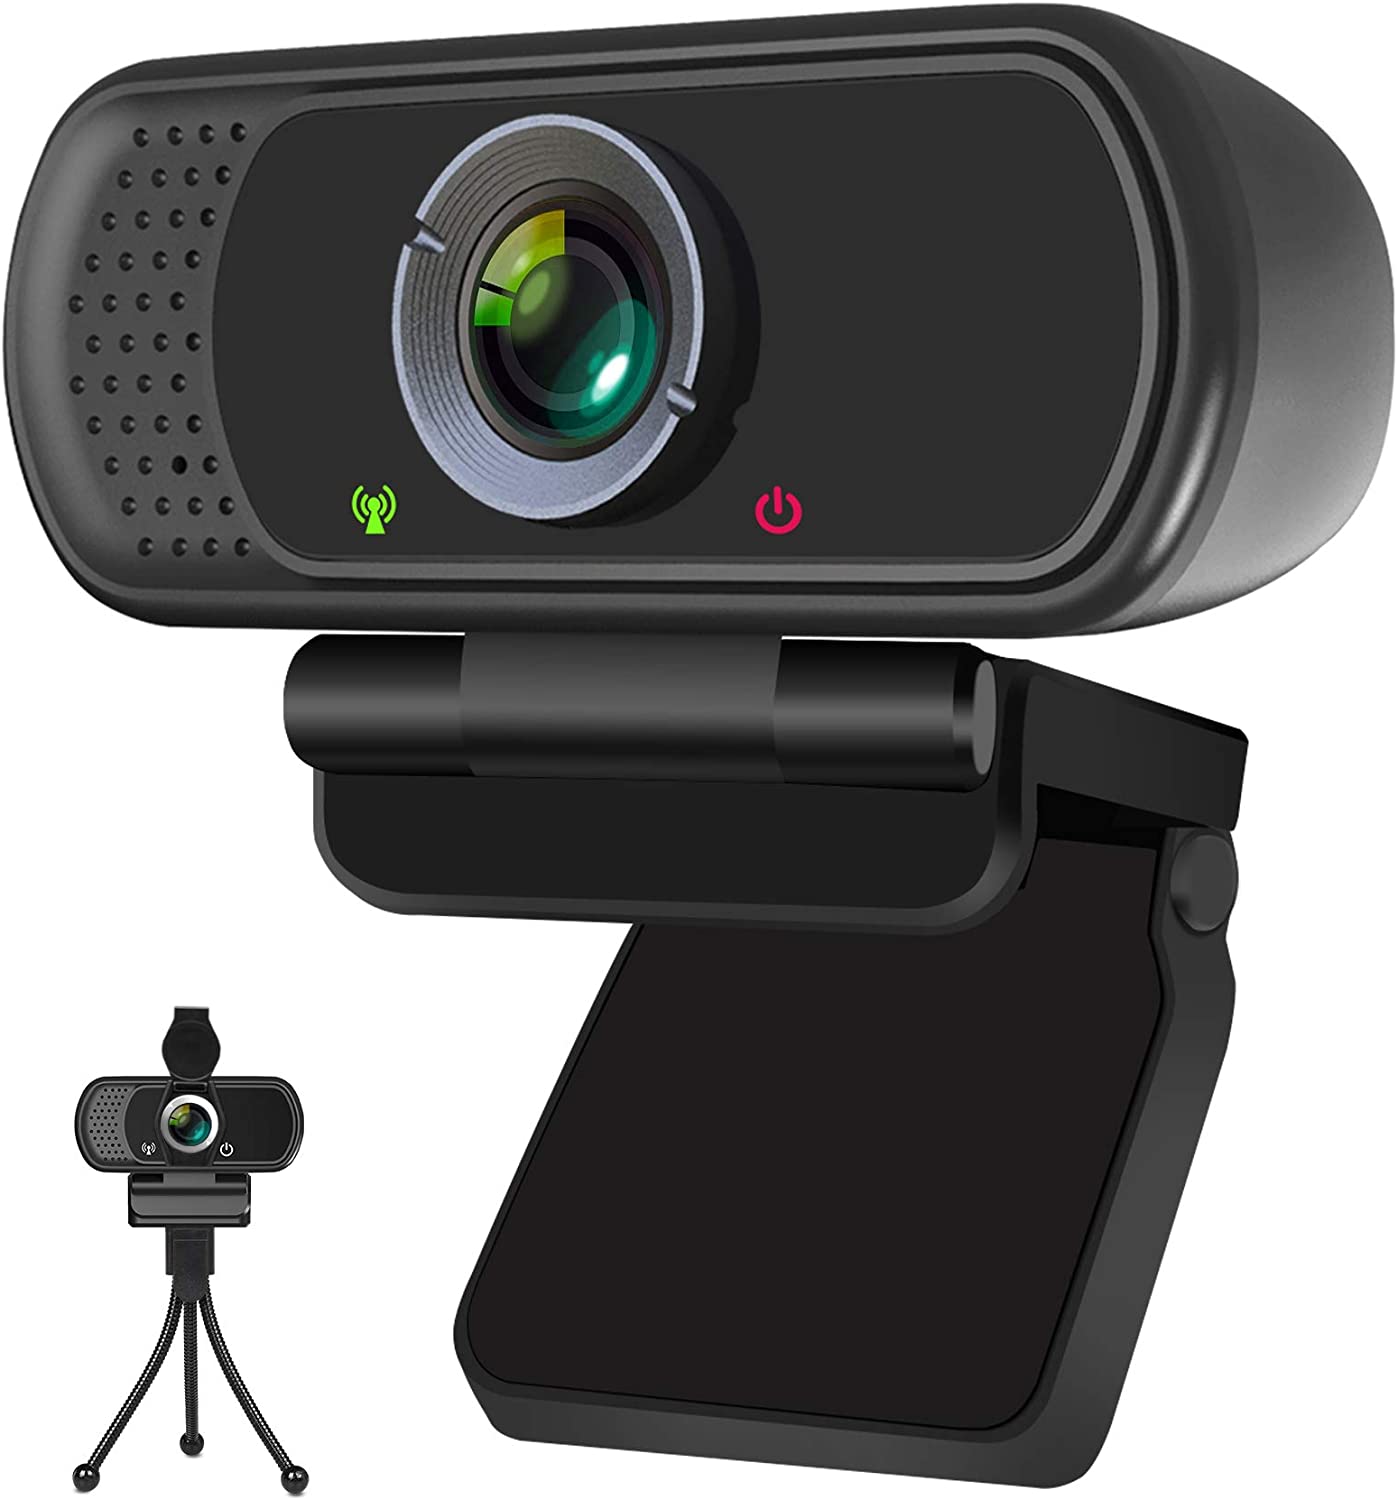 웹캠 개인 정보 셔터 및 삼각대 스탠드 포함 HD 1080P 마이크로폰 Pro 스트리밍 웹카메라 PC Mac 노트북 데스크톱용 와이드스크린 USB 컴퓨터 카메라 비디오 통화 회의 녹화